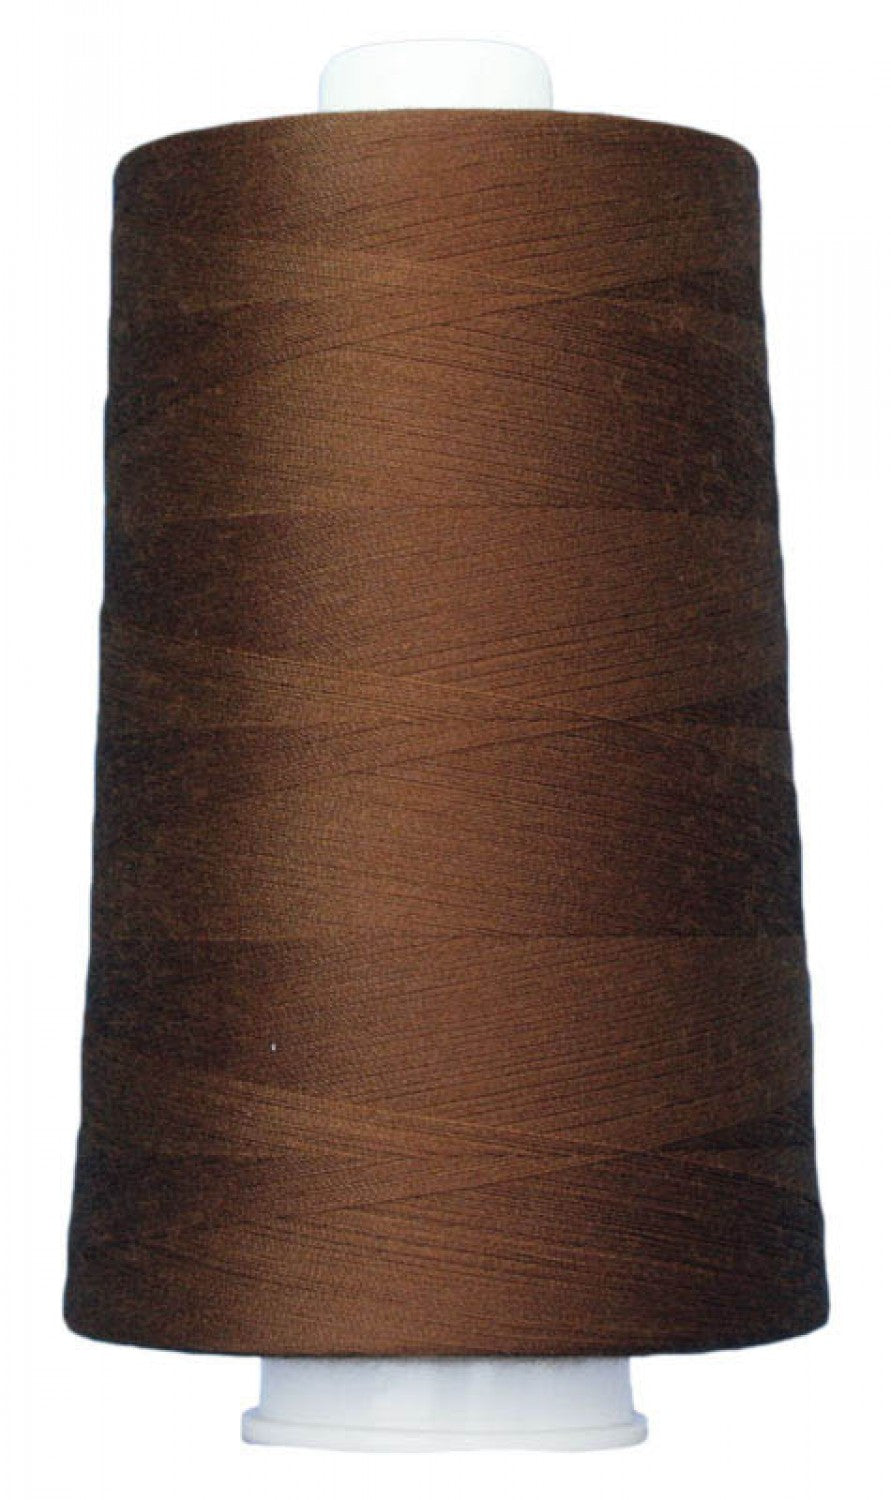 OMNI Quilting Thread / Medium Brown